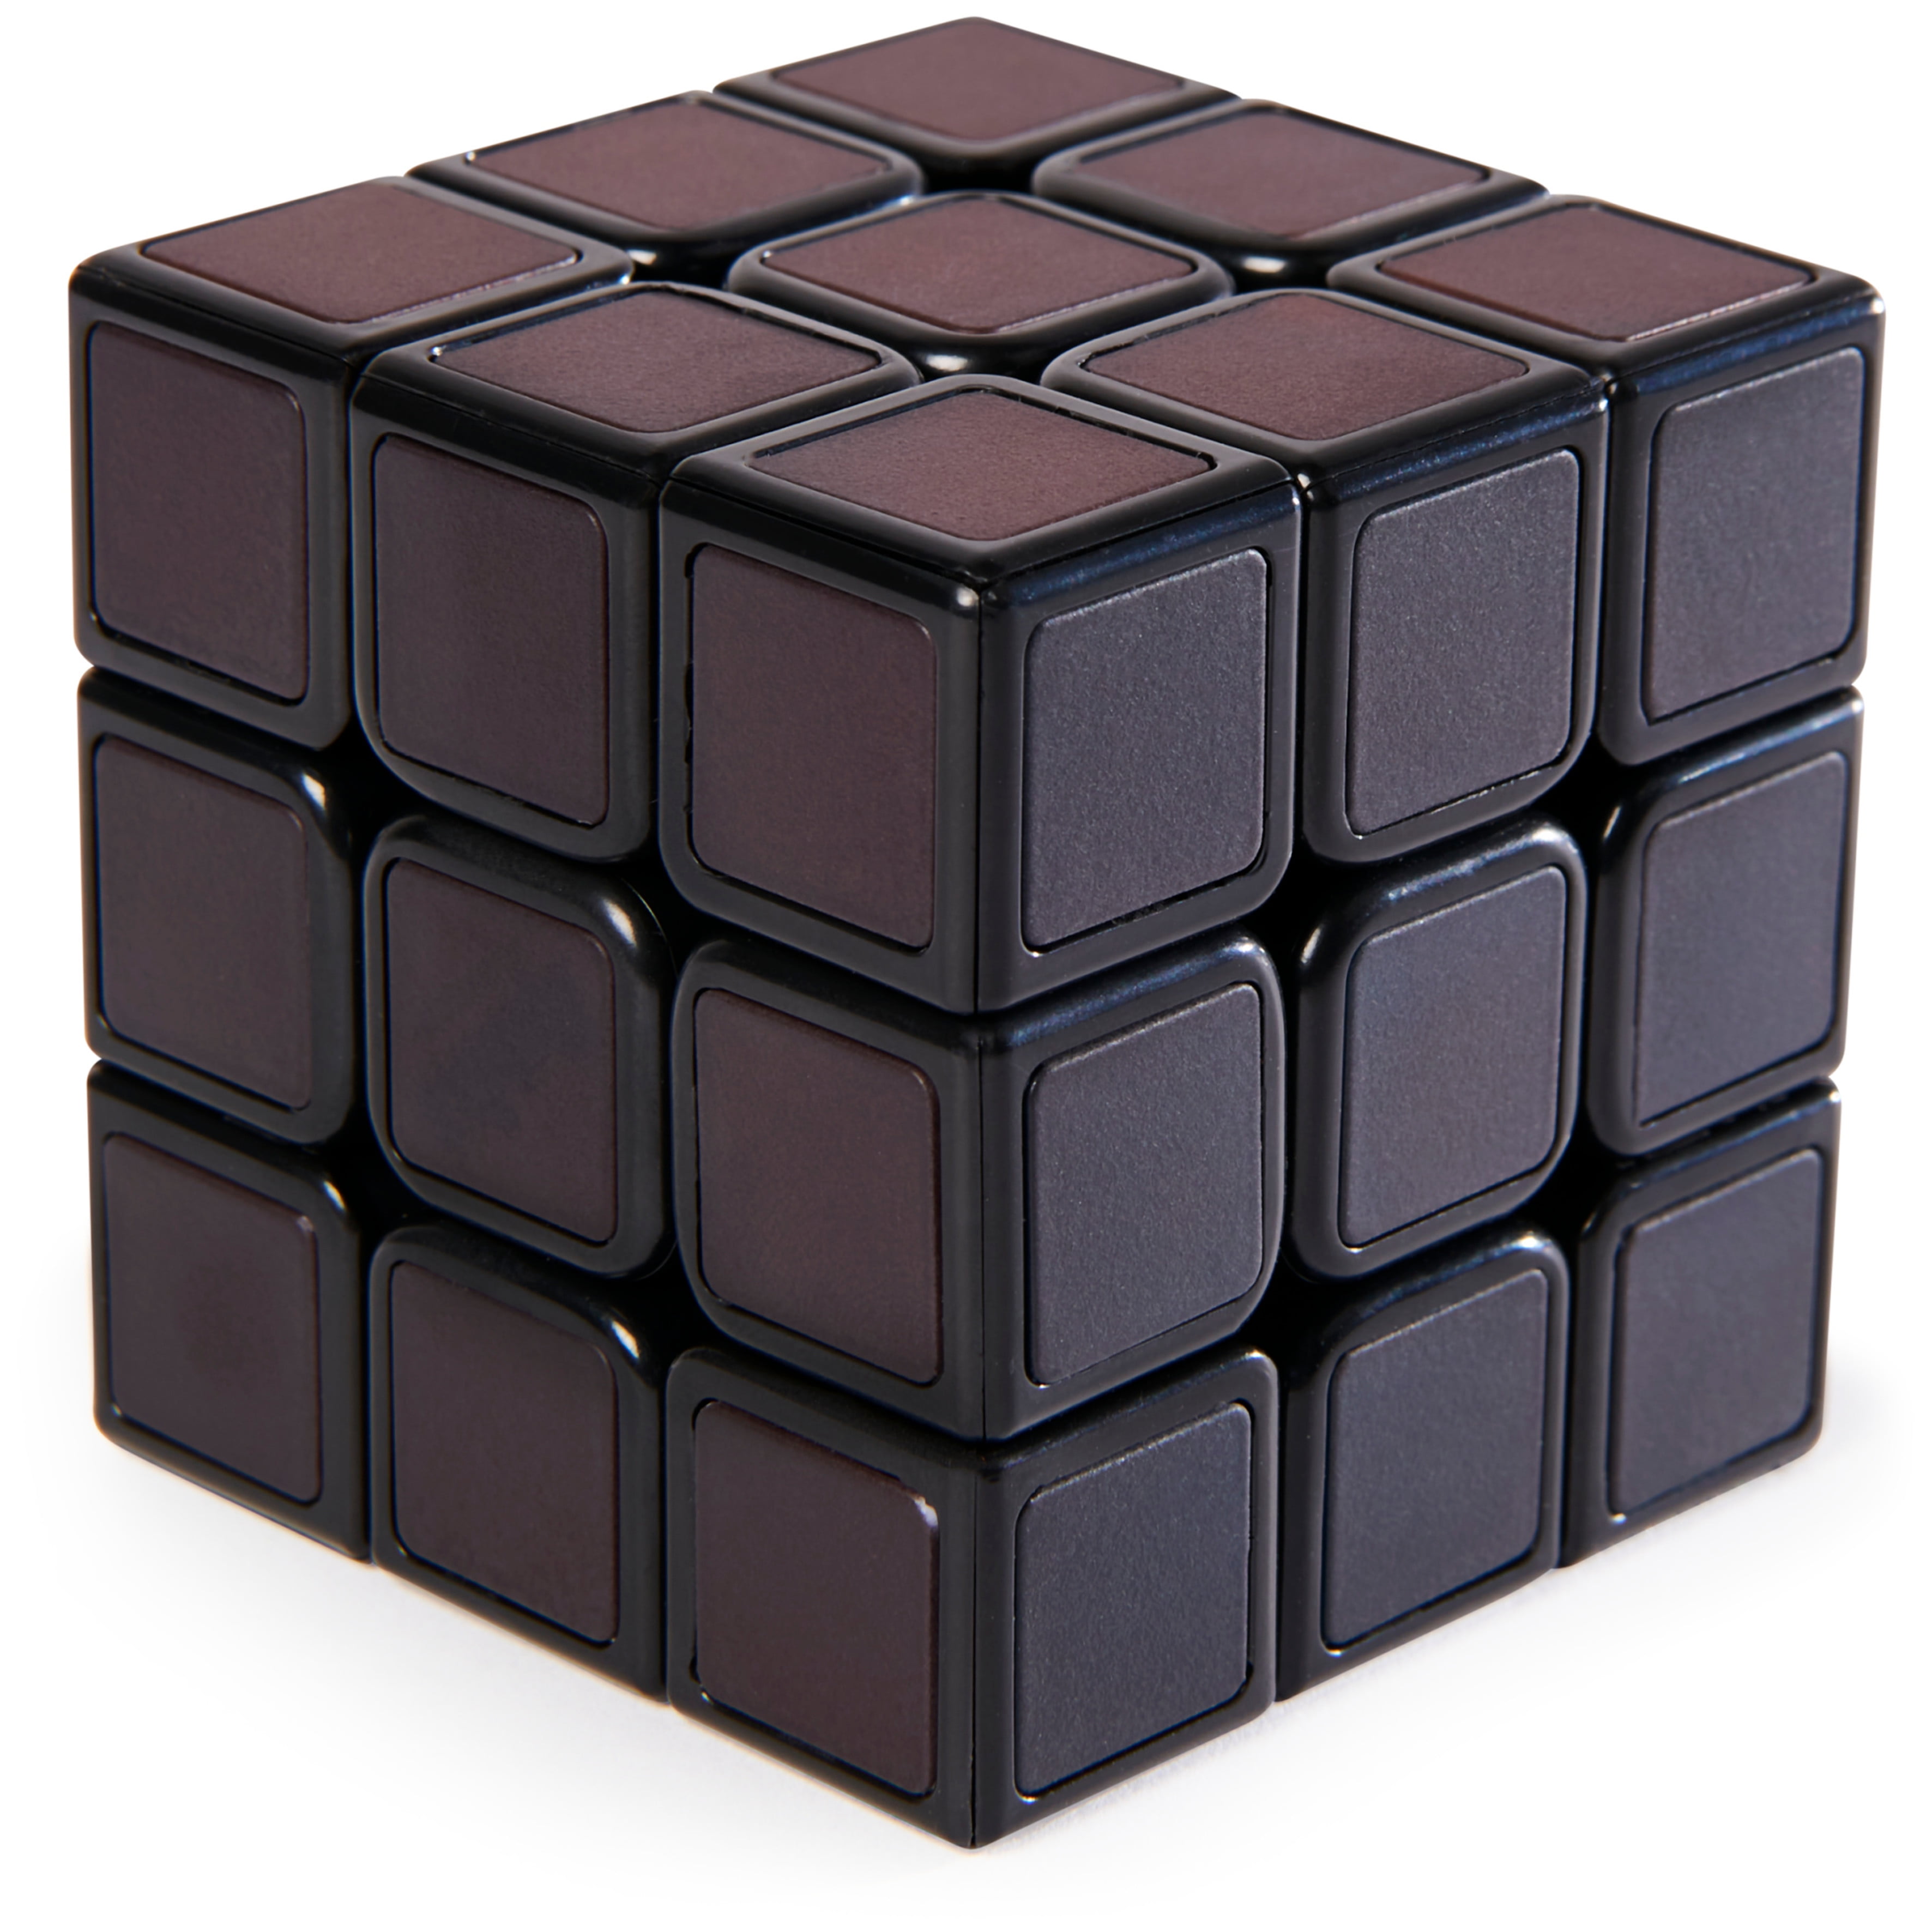 Perplexus Rubik's 3x3